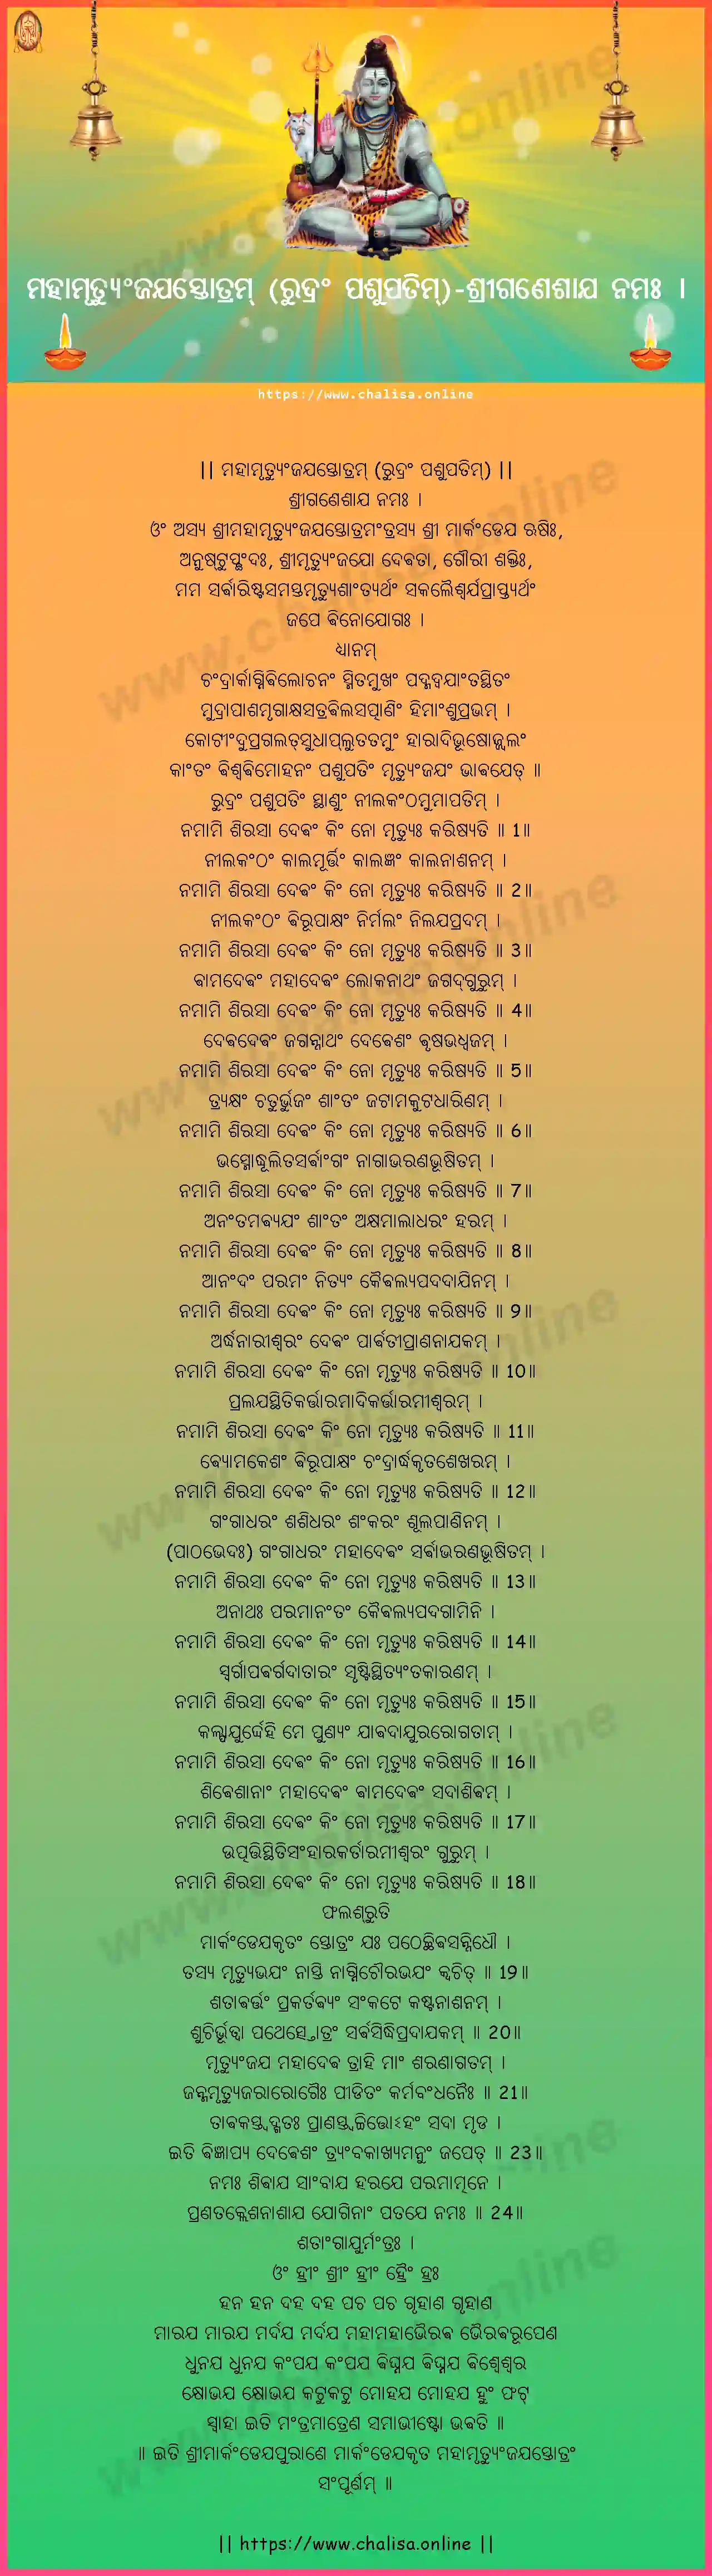 sriganesaya-namah-maha-mrutyunjaya-stotram-rudram-pasupatim-oriya-oriya-lyrics-download